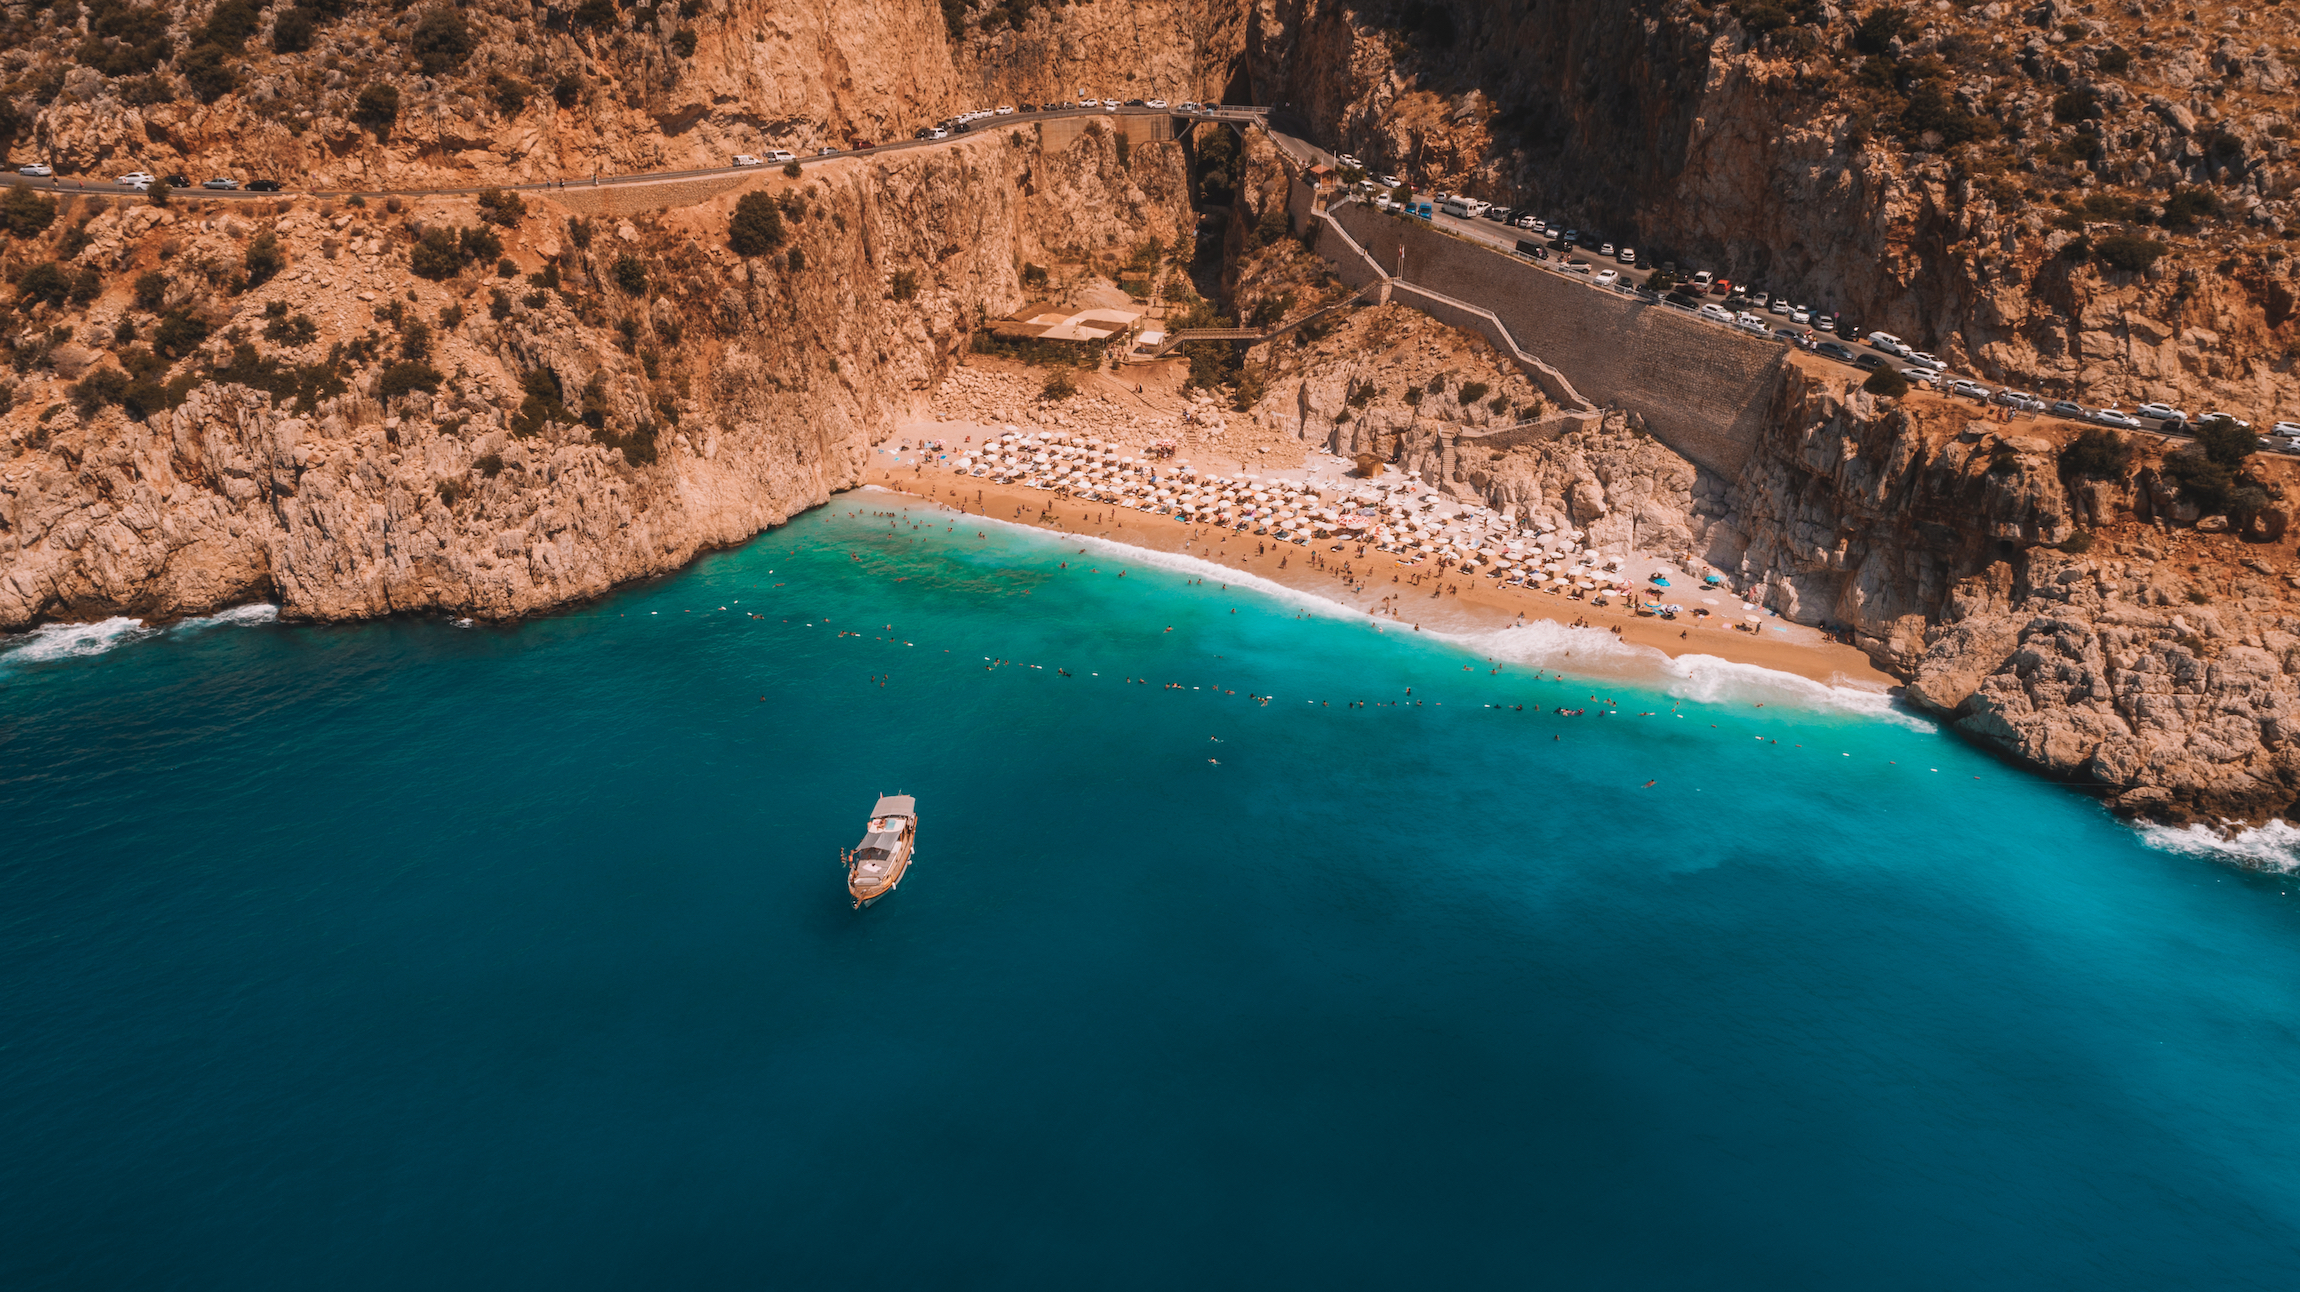 Plaża Kaputas. Ludzie cieszący się słońcem i morzem na pięknym turkusowym morzu i piaszczystej plaży Kaputas. Bird's eye view drone. Morze i niebieskie niebo w tle. Morze Śródziemne, Kas / Antalya - TURCJA